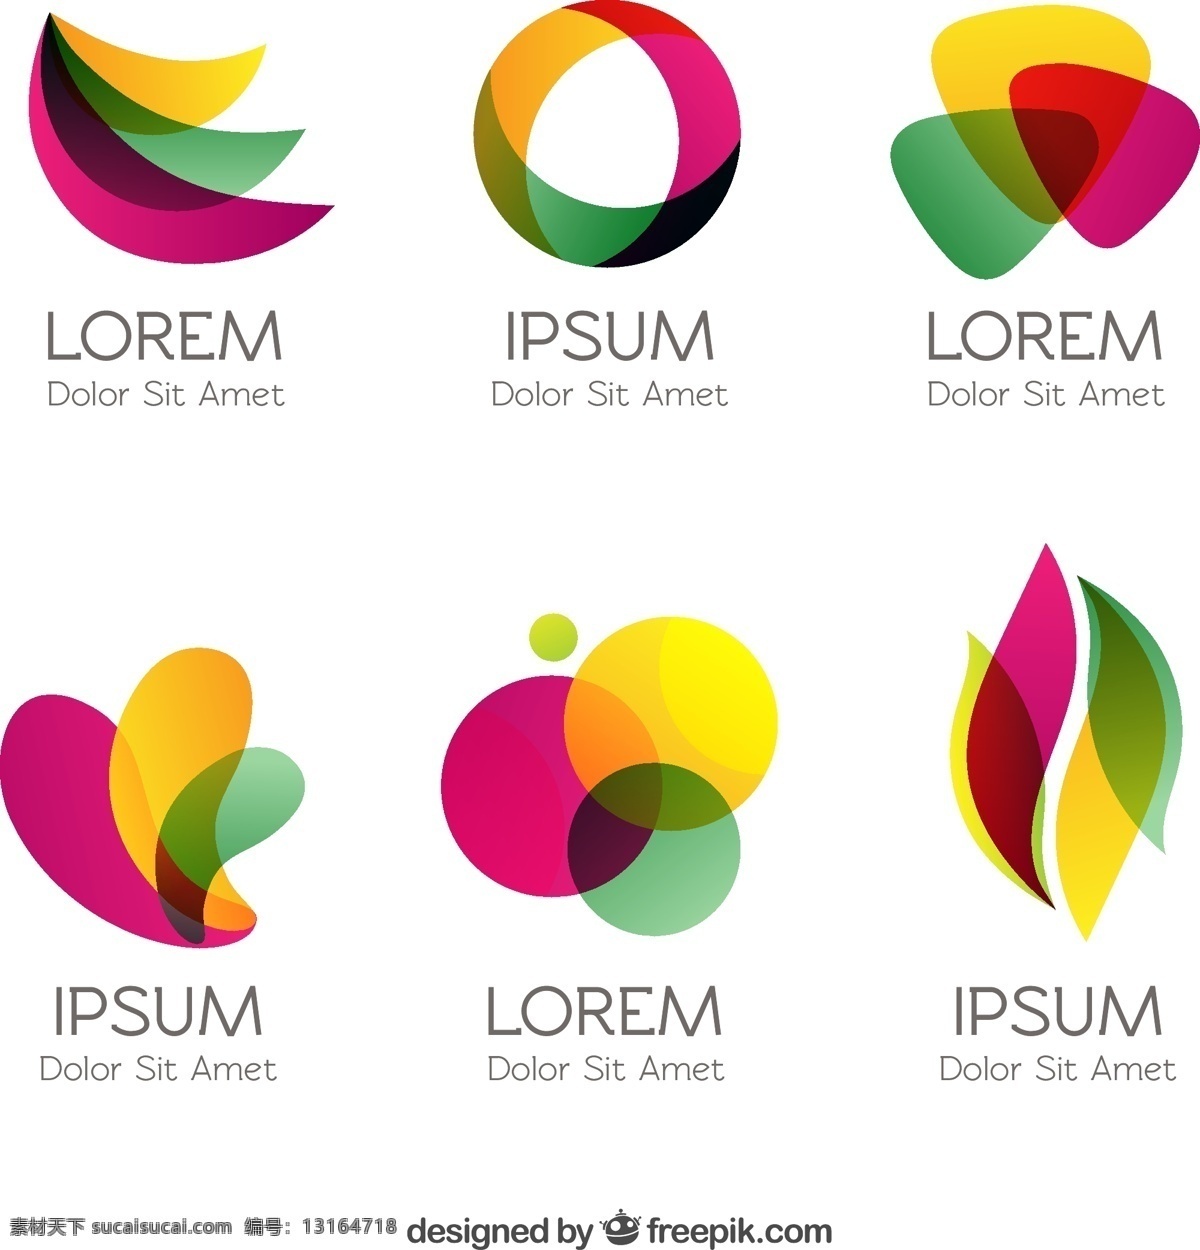 在抽象风格 标志 抽象 企业 七彩虹 公司 身份 风格 有色多彩徽标